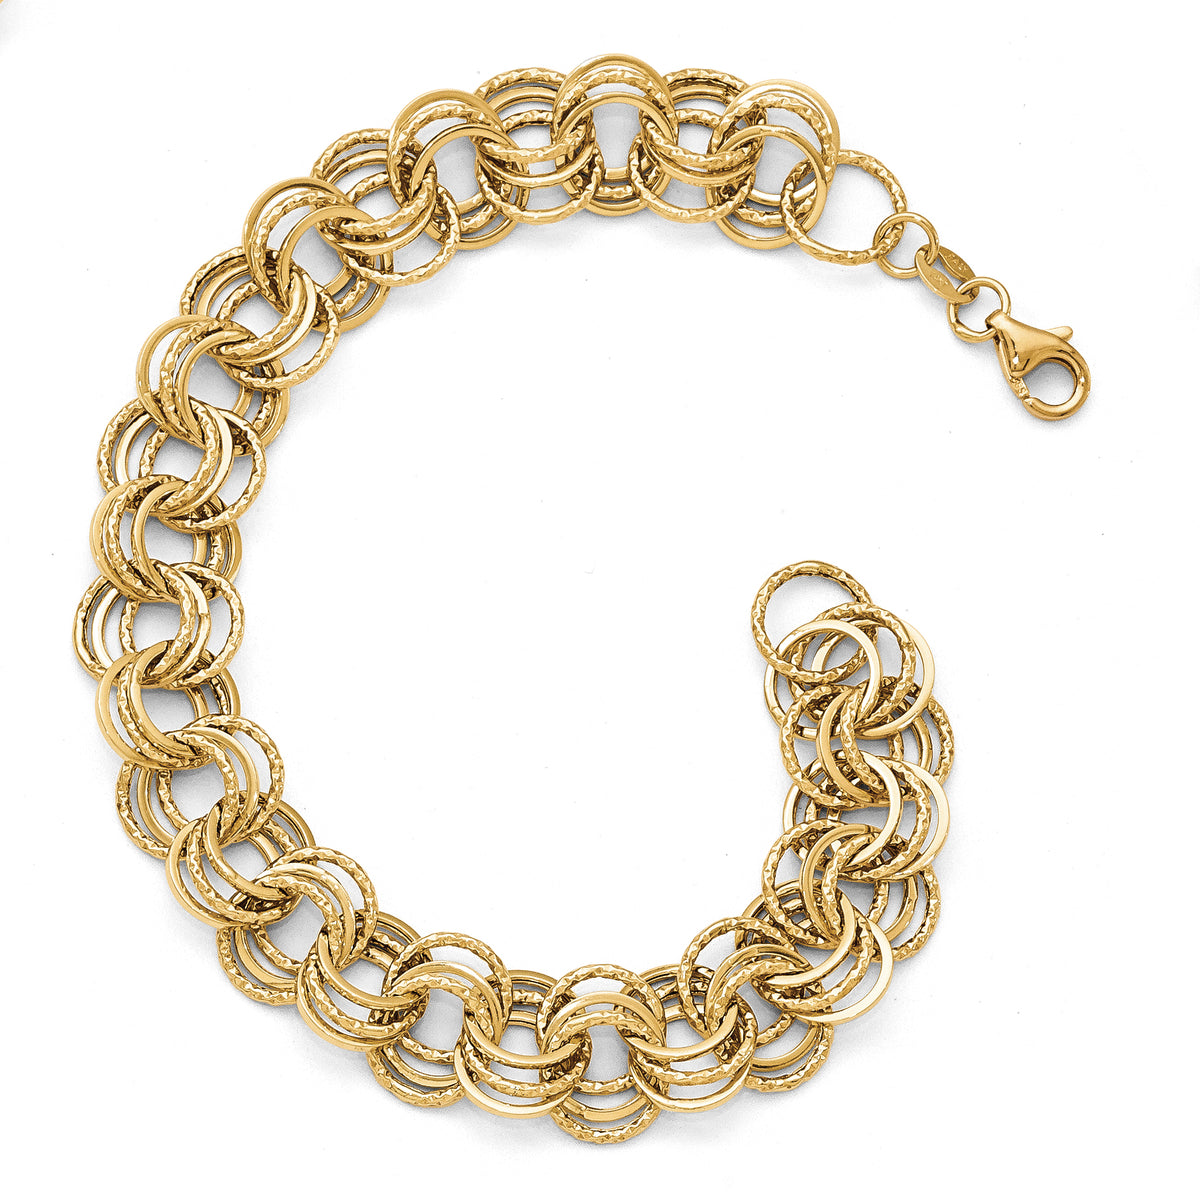 Leslie's 14K Gold Polished Textured Round Link Bracelet